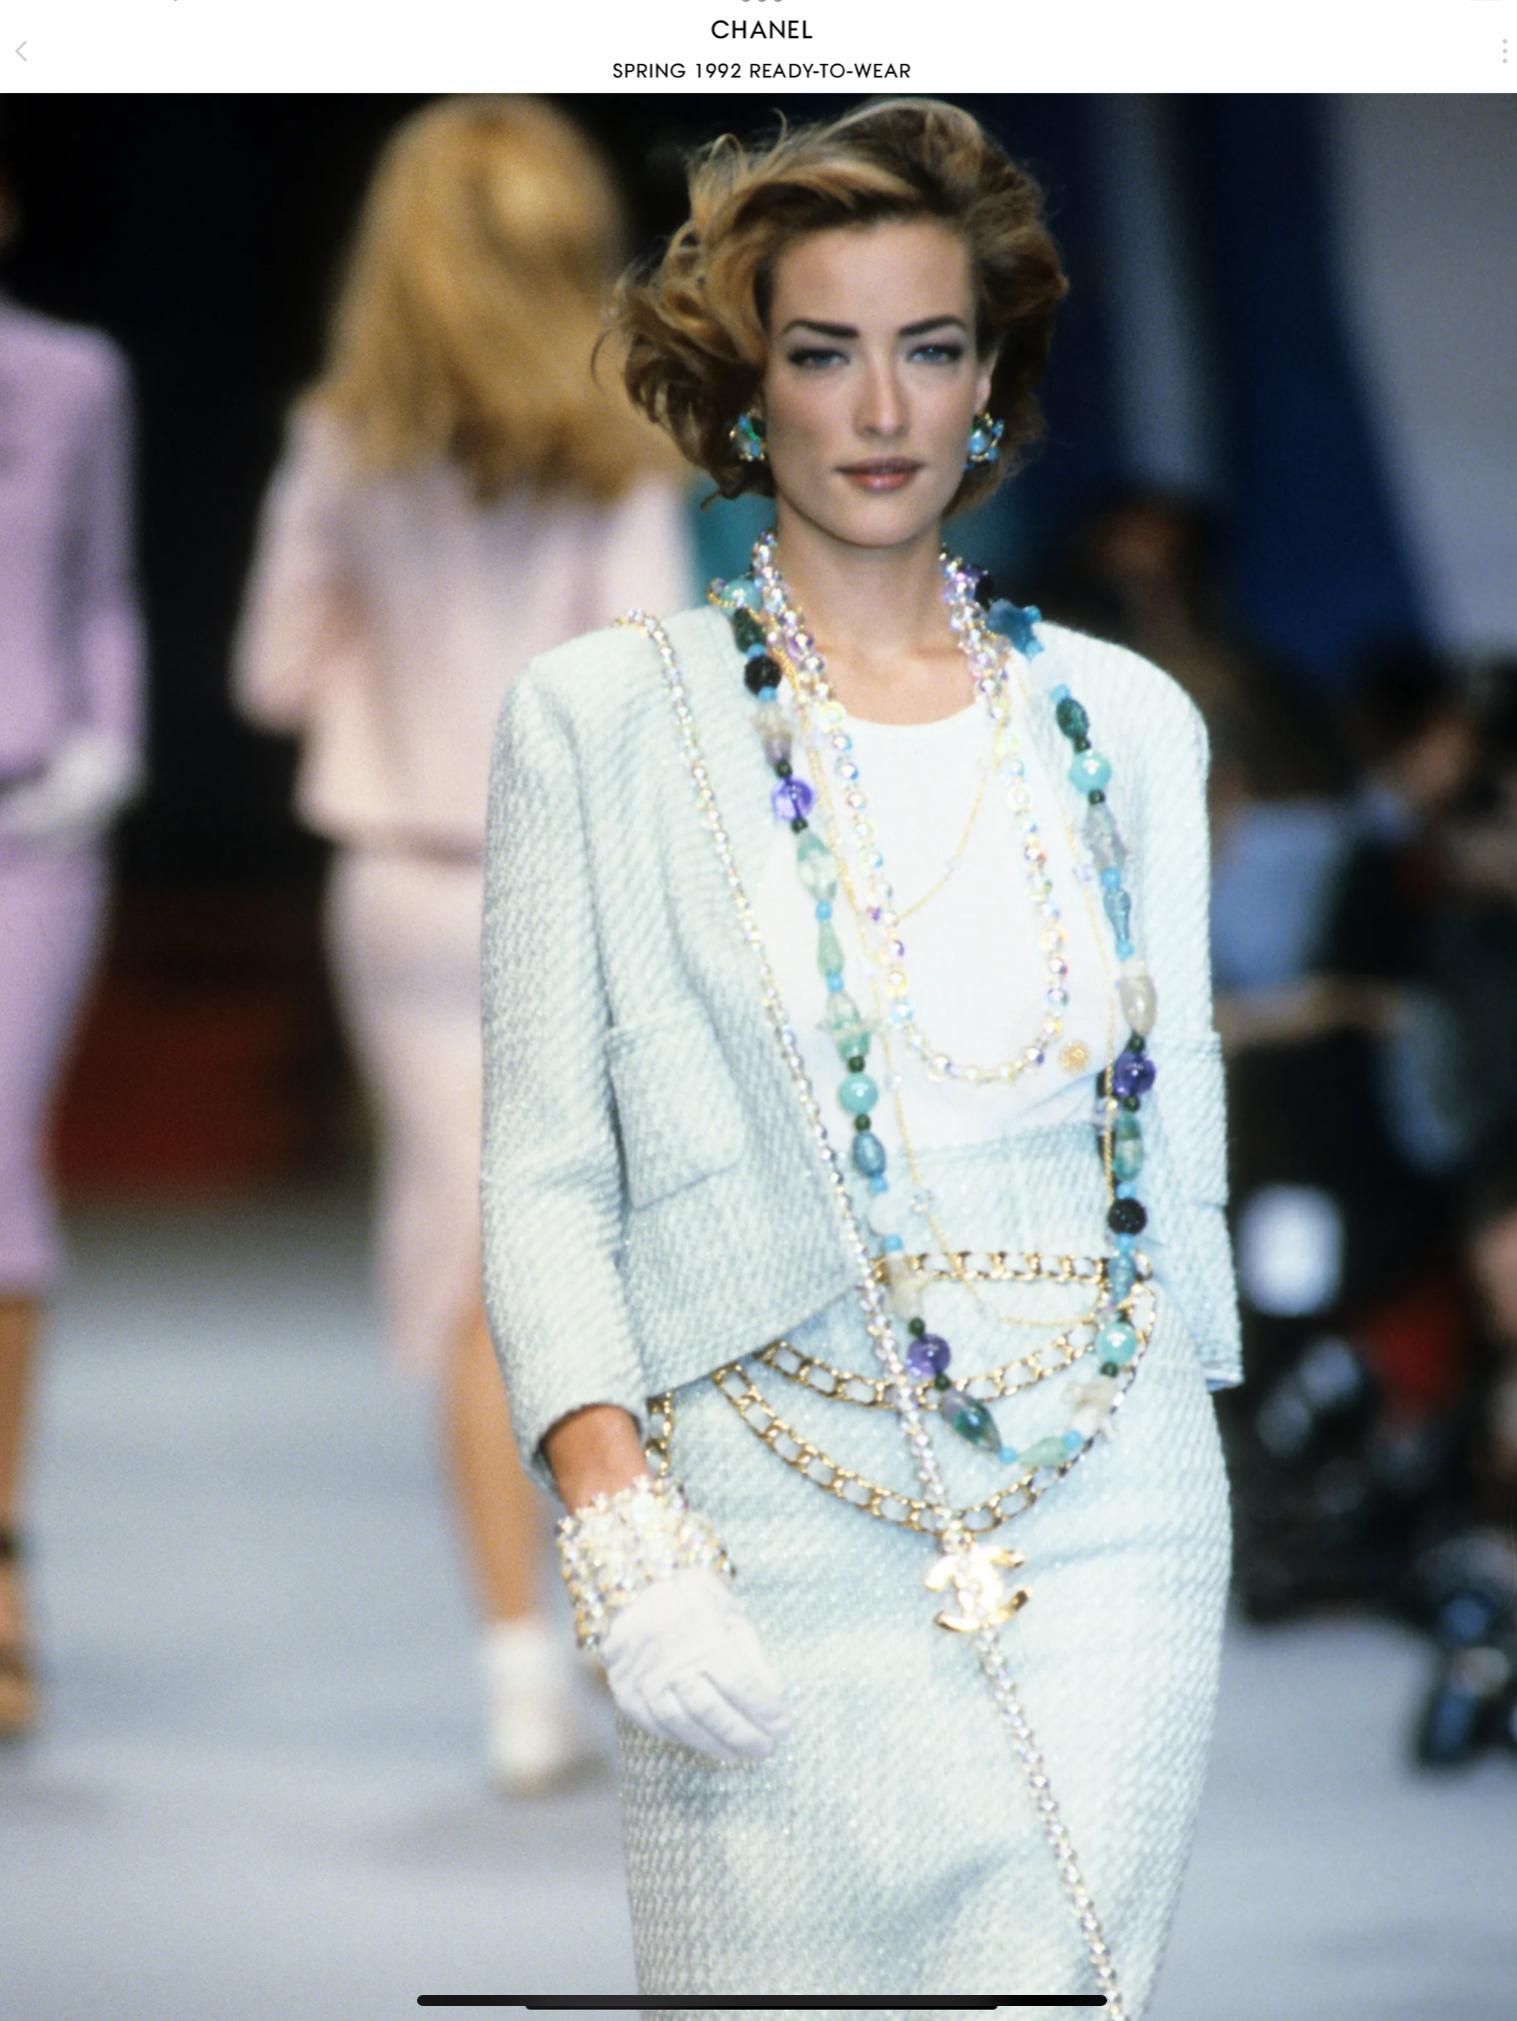 Chanel Boutique Runway Spring 1992 Ivory & Pale Turquoise Wool/Silk Woven Tweed Jacket - Taille 44 sur l'étiquette mais cet article a été retouché et correspond plus à une taille 4 US. Cette superbe veste de défilé de Chanel a été utilisée pour le